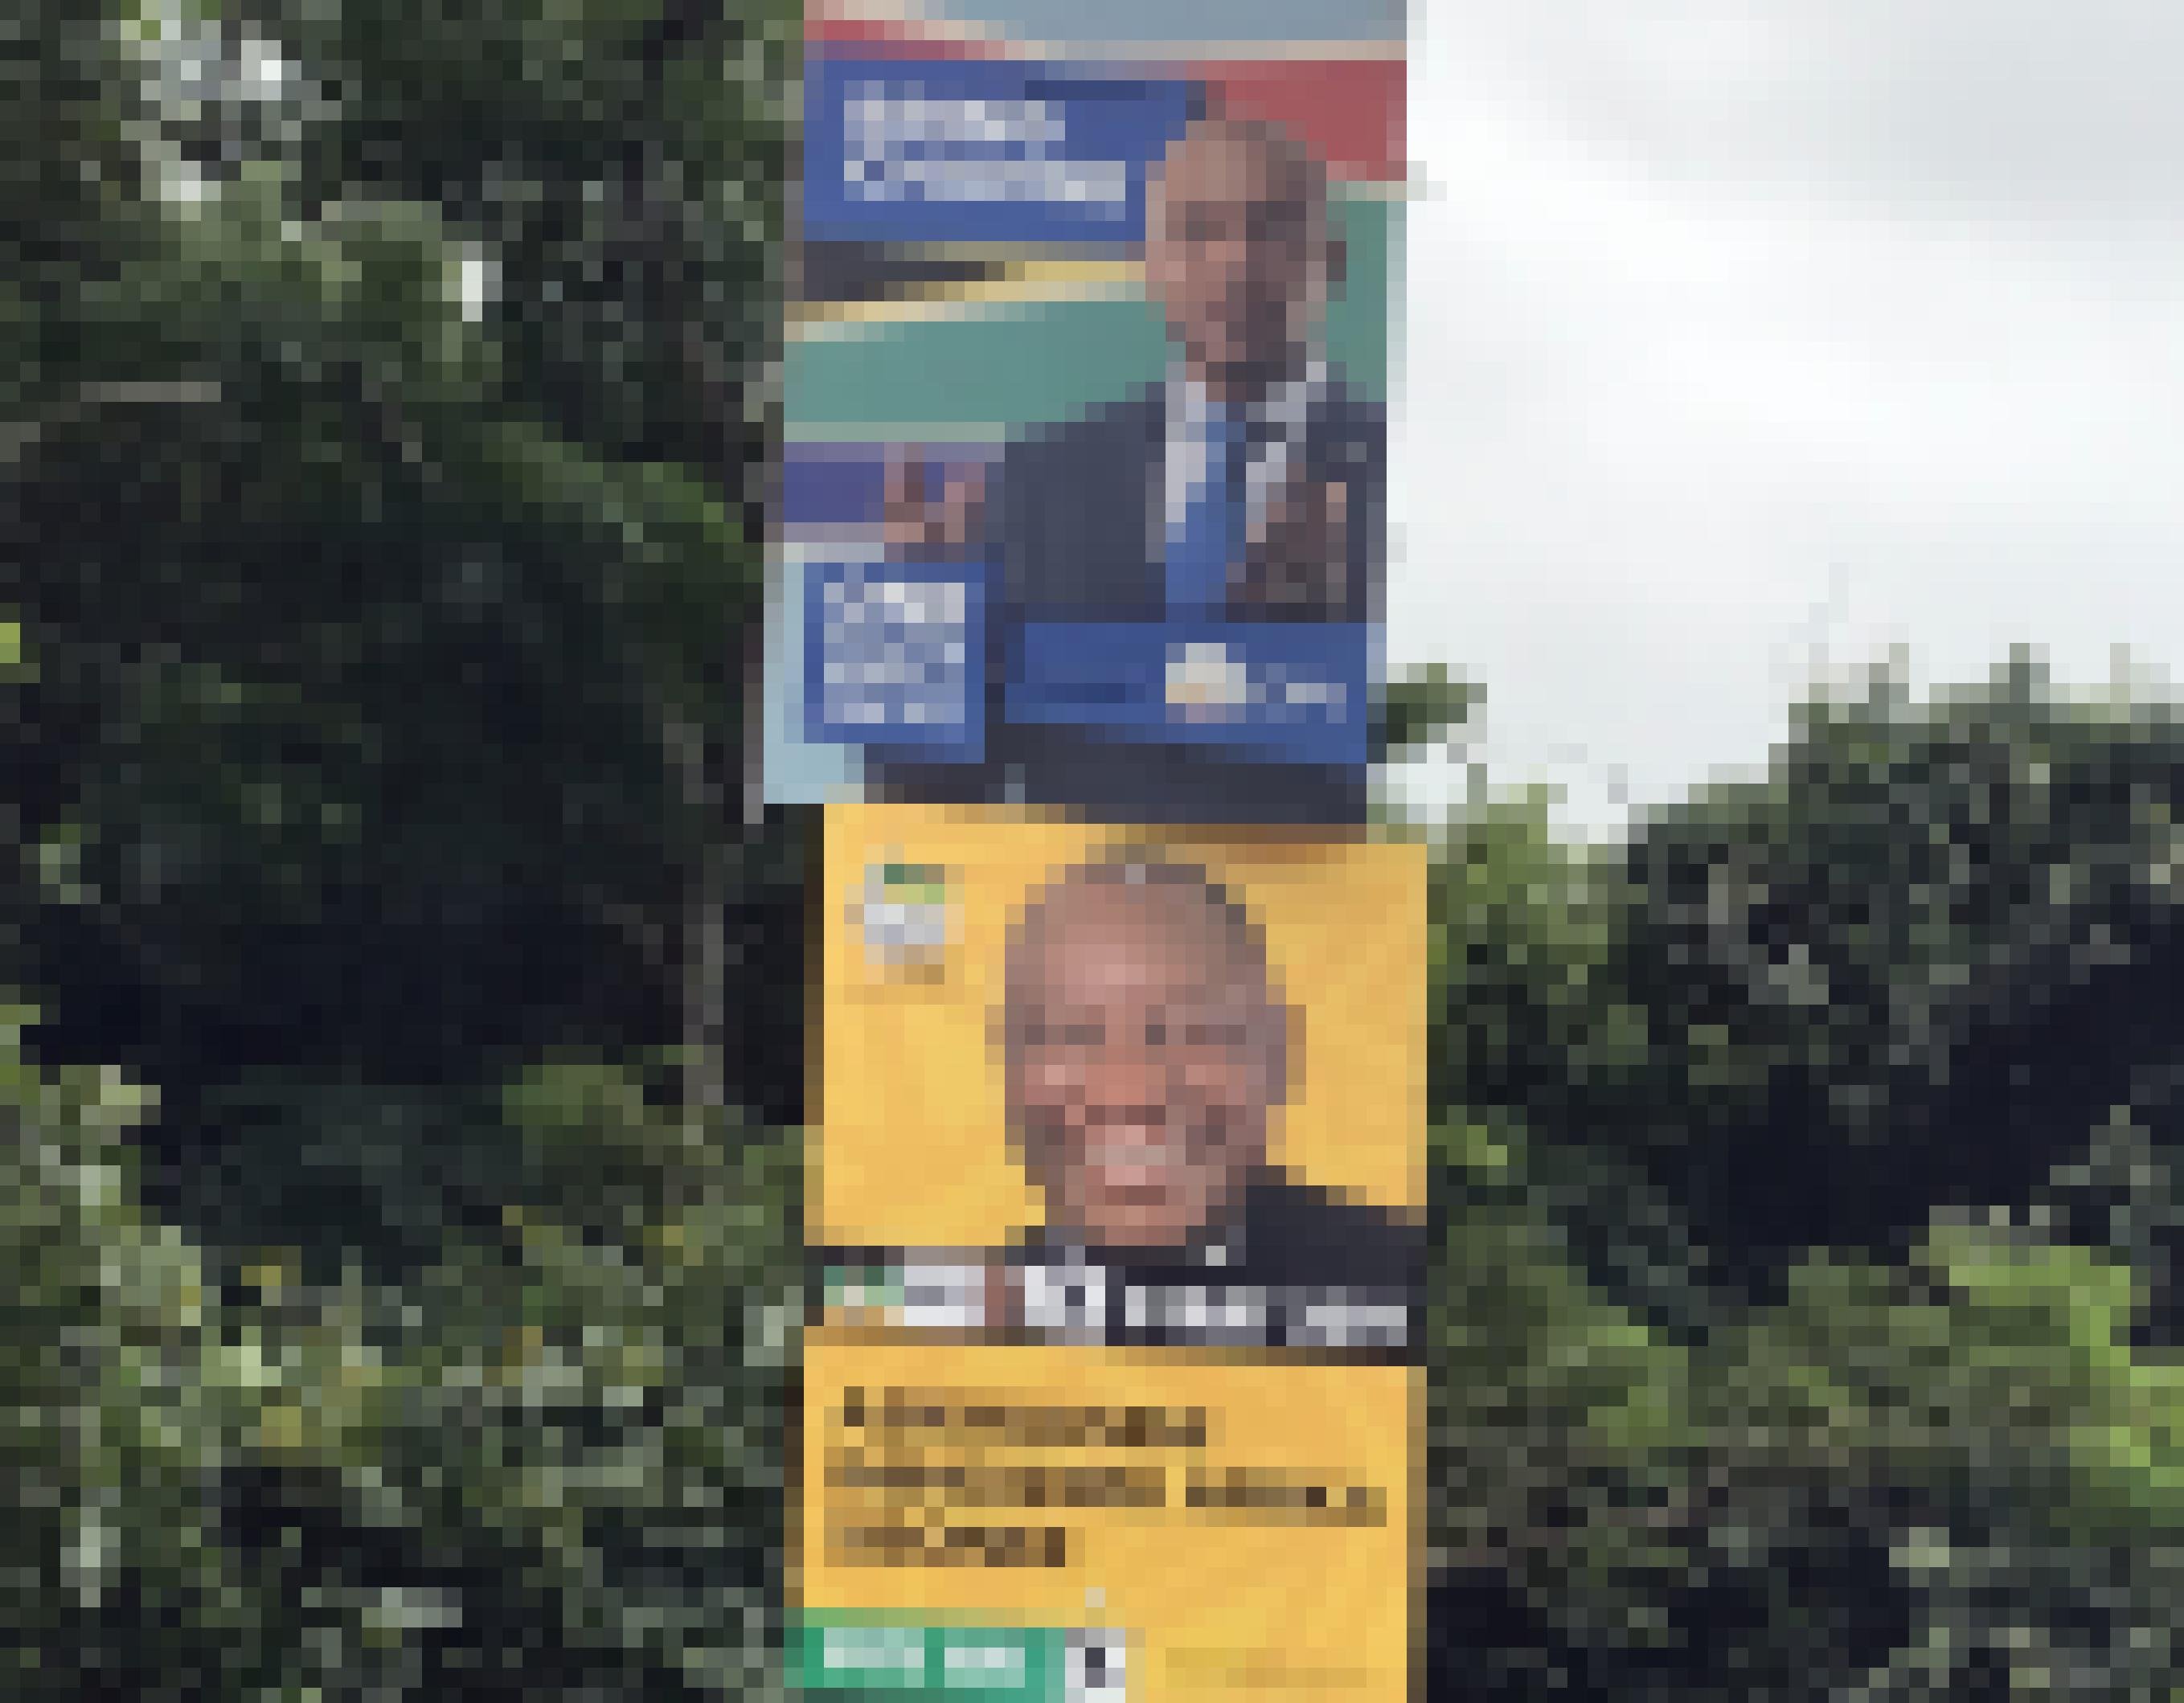 Wahlplakate aus dem Jahr 2019 die für die Regierungspartei ANC und die oppositionelle DA werben